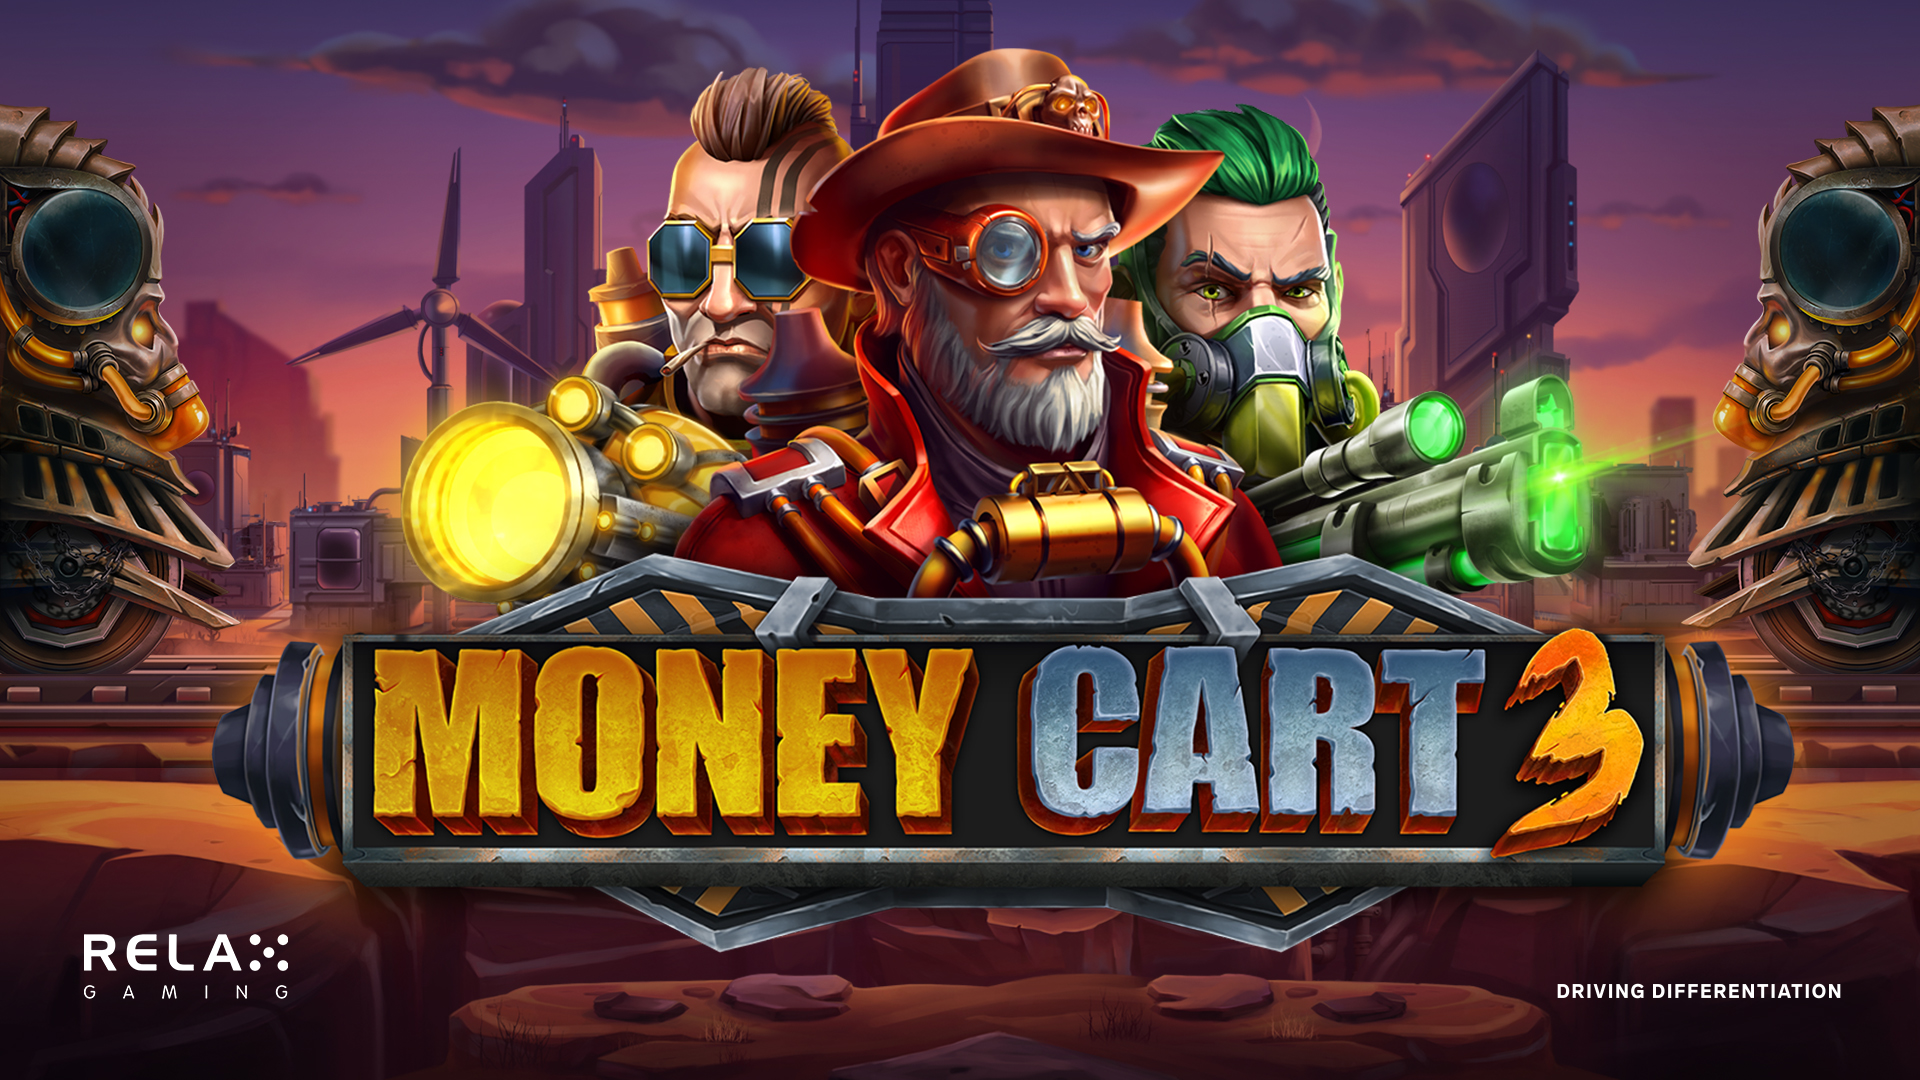 Money Cart 3